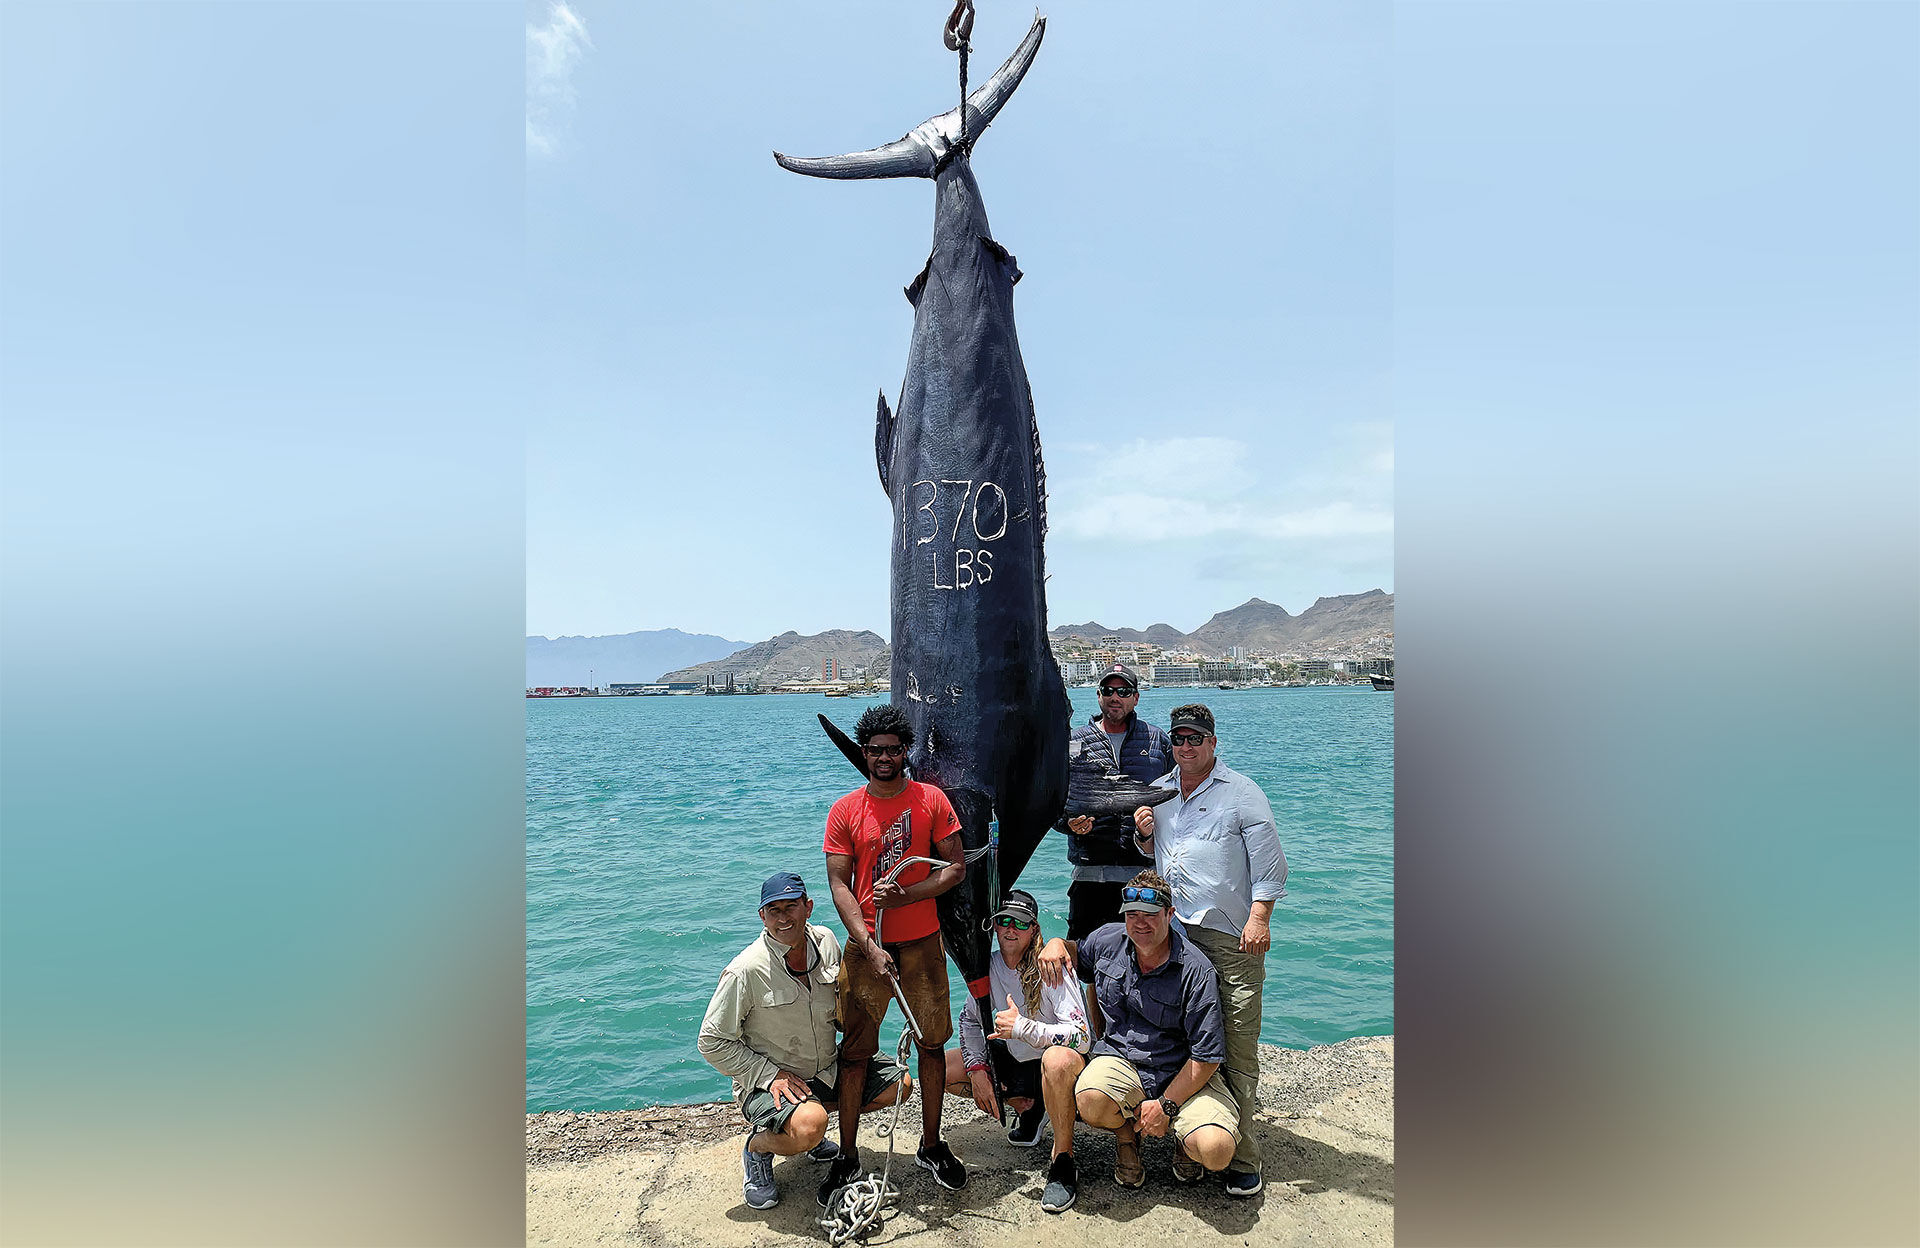  Unglaubliche 1370 Pfund – neuer Rekord auf Cabo Verde.  